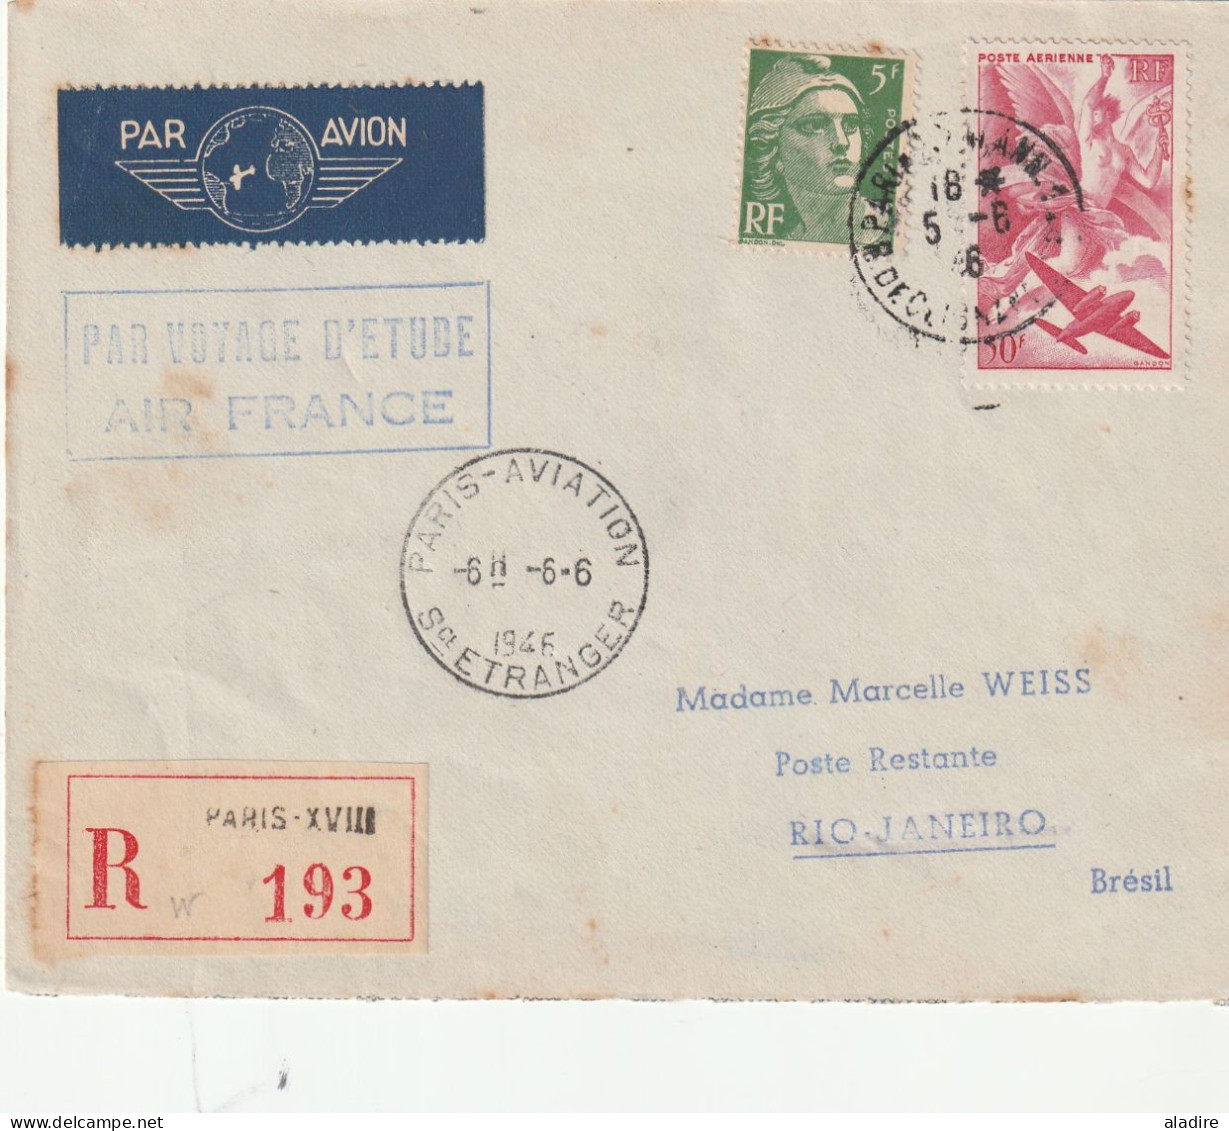 1944 /1958 - collection de 16 enveloppes PAR AVION - POSTE AERIENNE - nombreux timbres - 32 scans